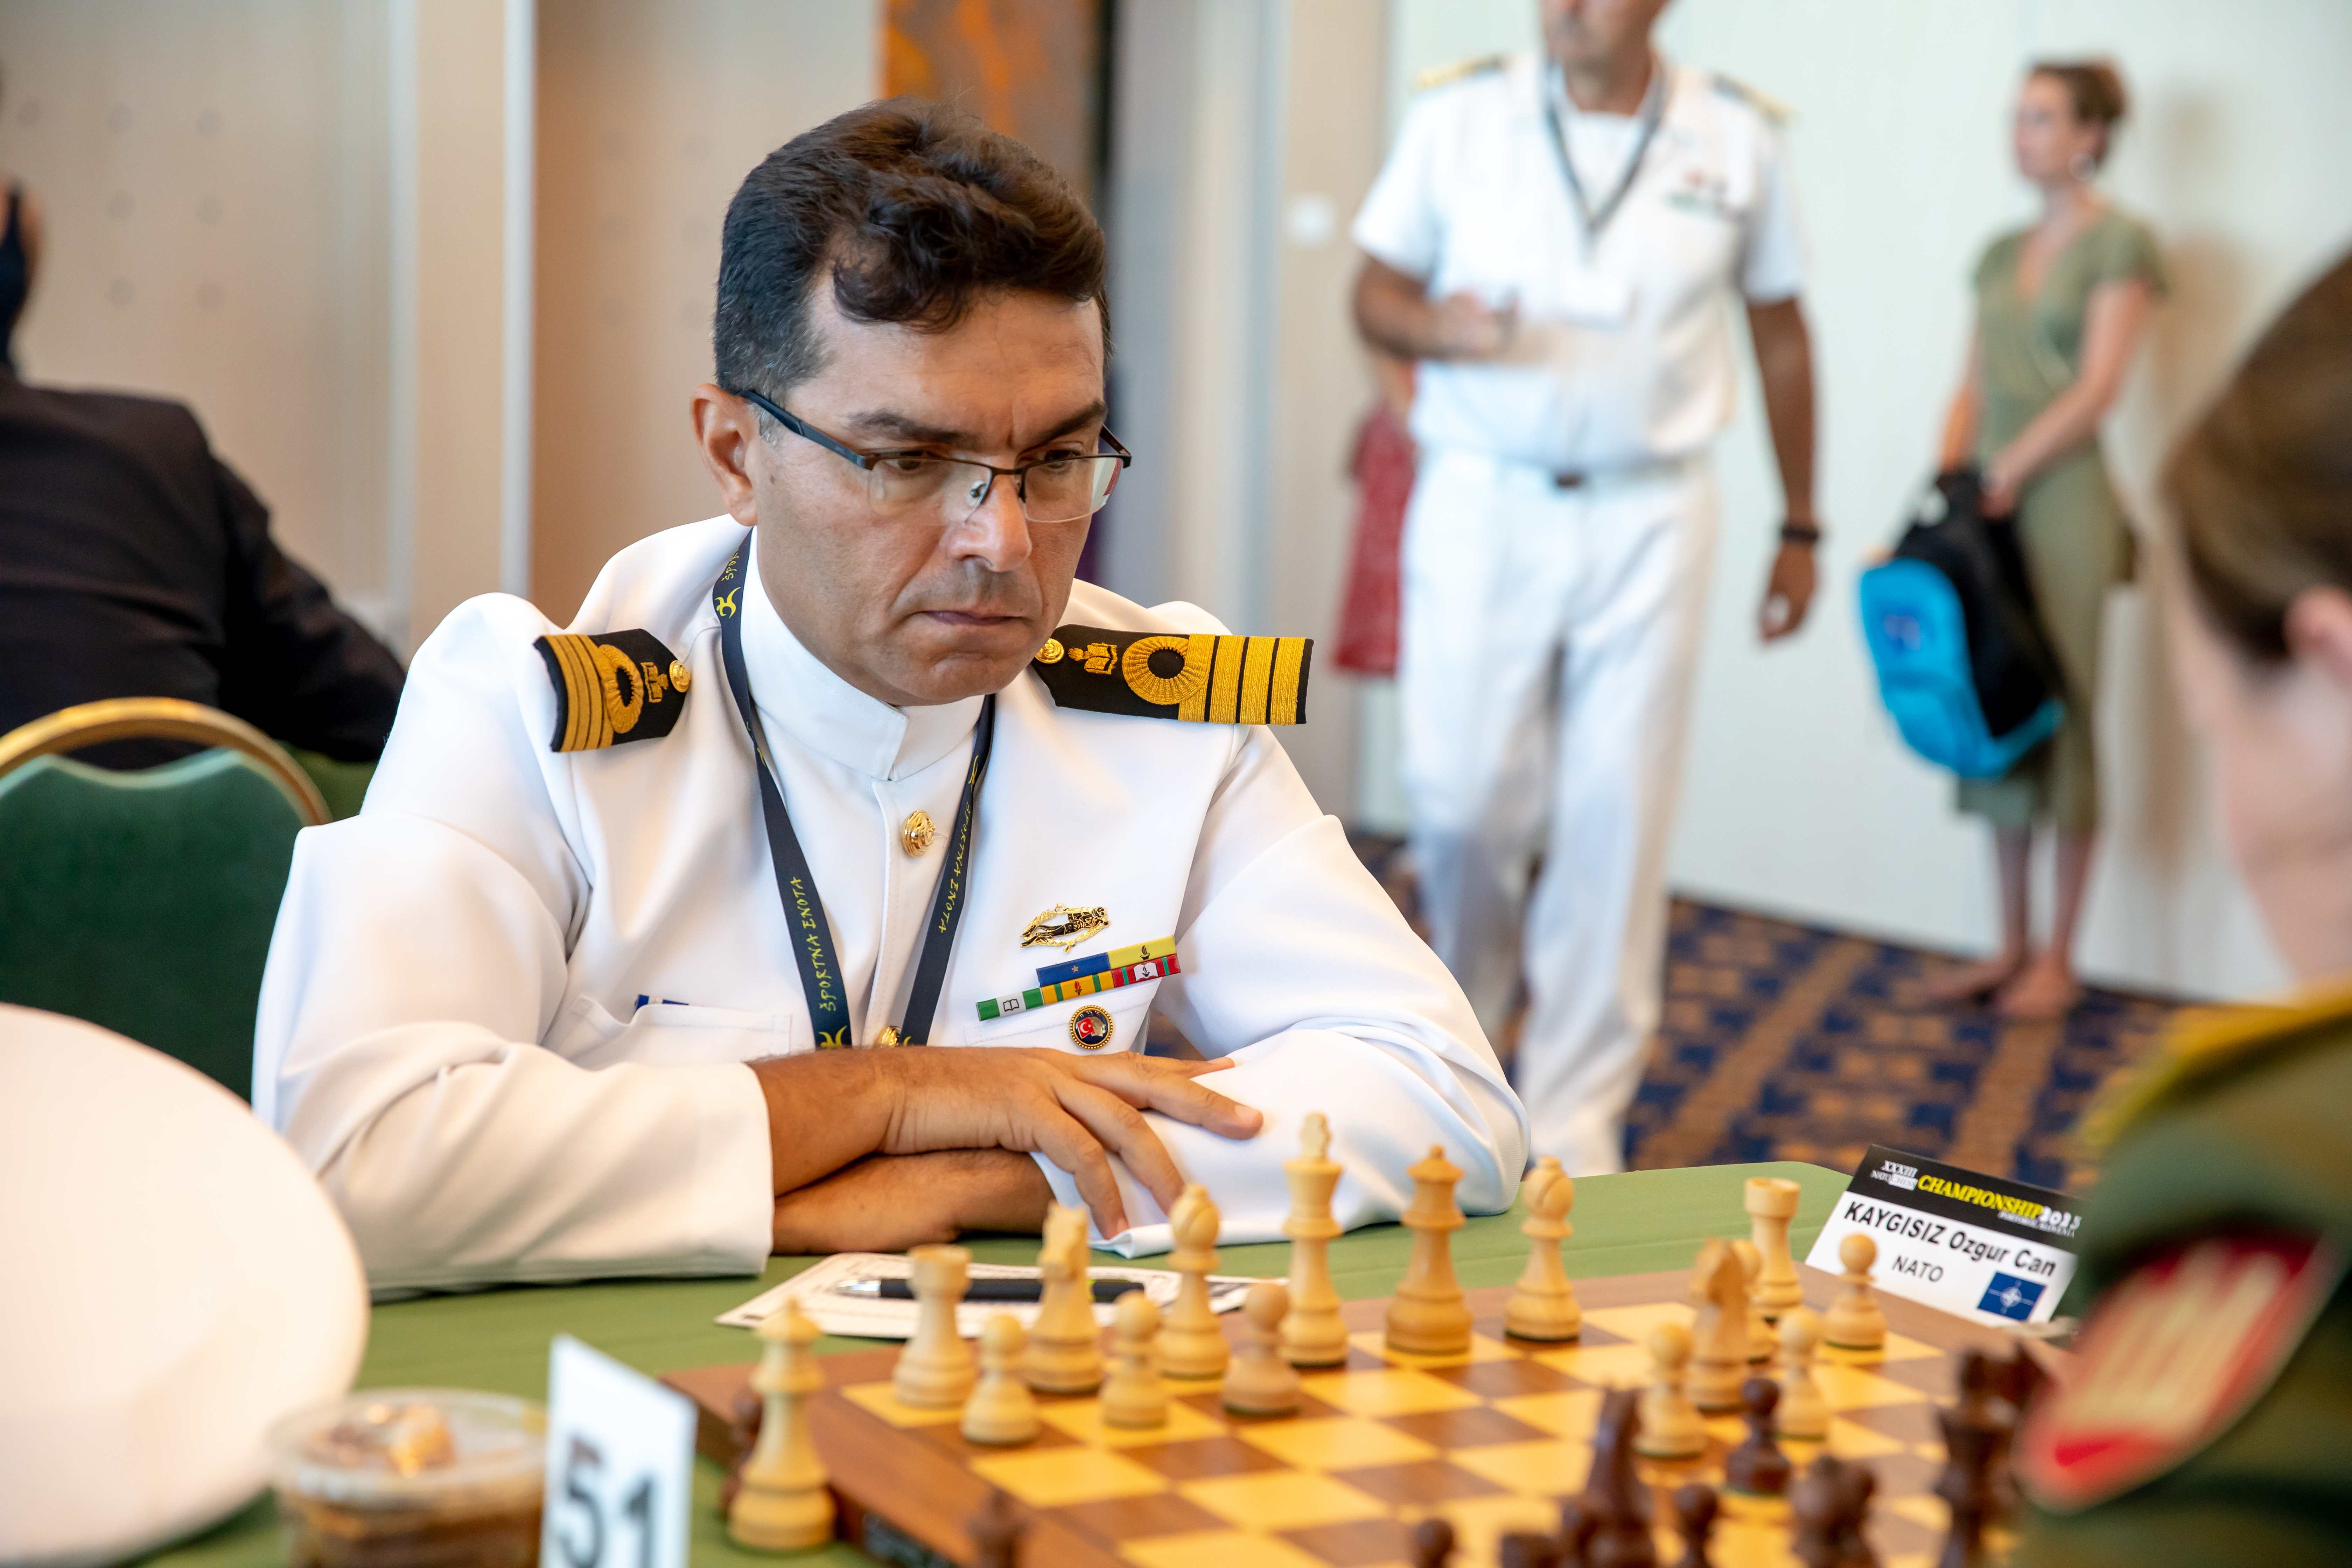 27th NATO Chess Championship 2016